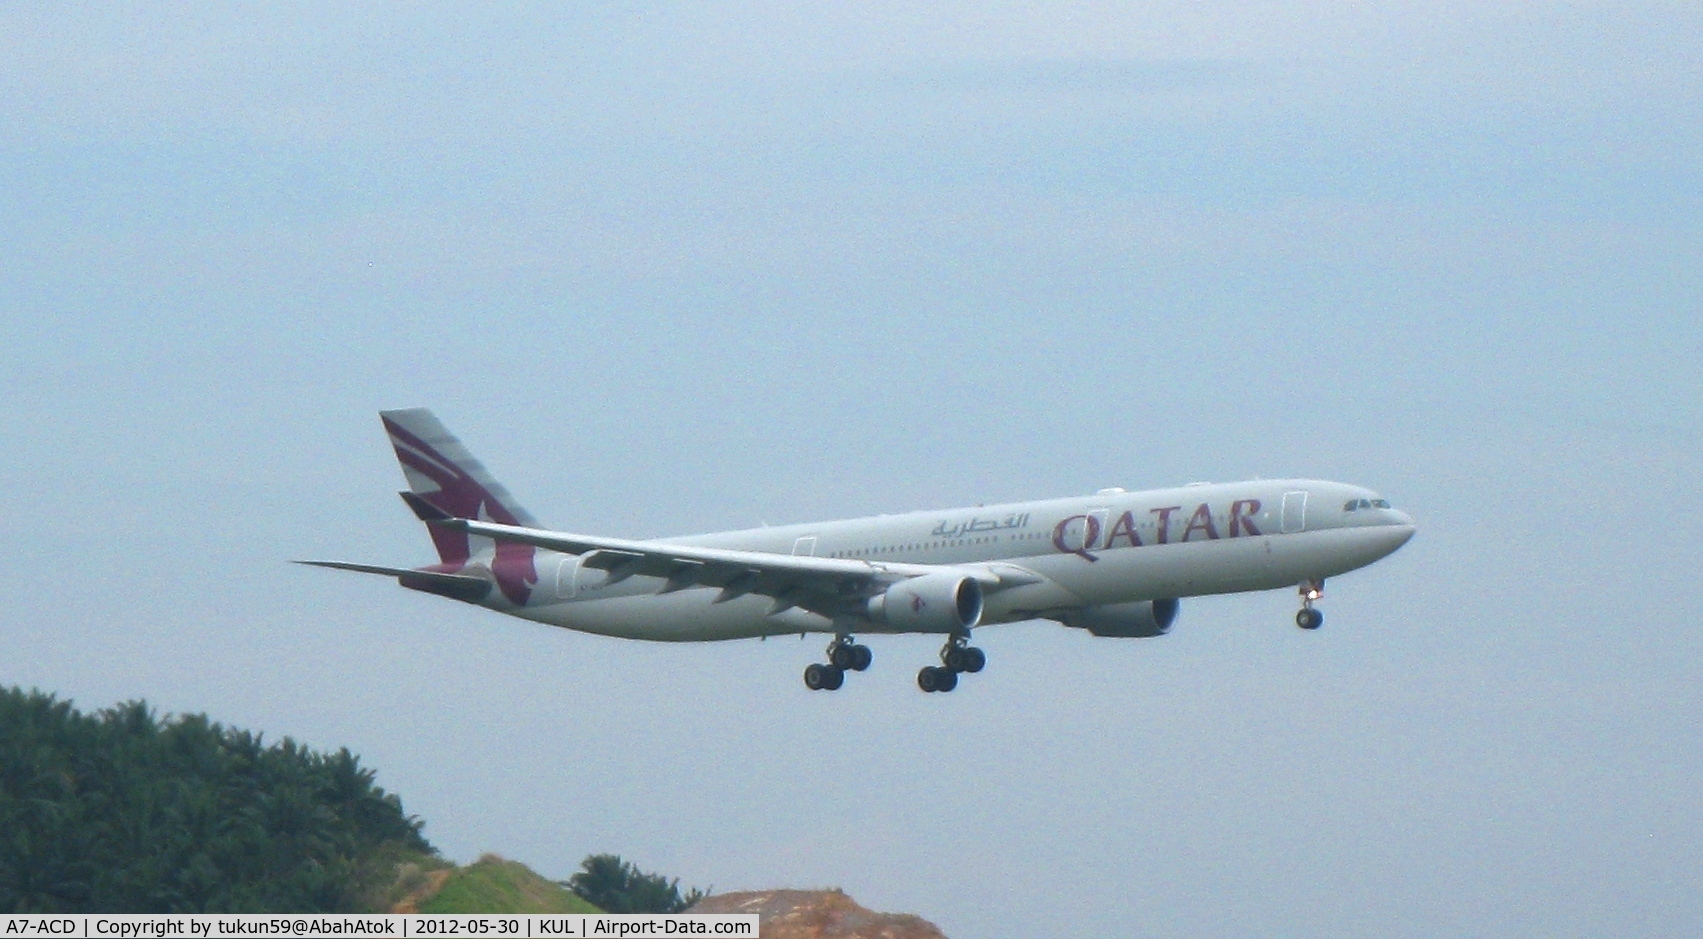 A7-ACD, 2003 Airbus A330-202 C/N 521, Qatar Airways